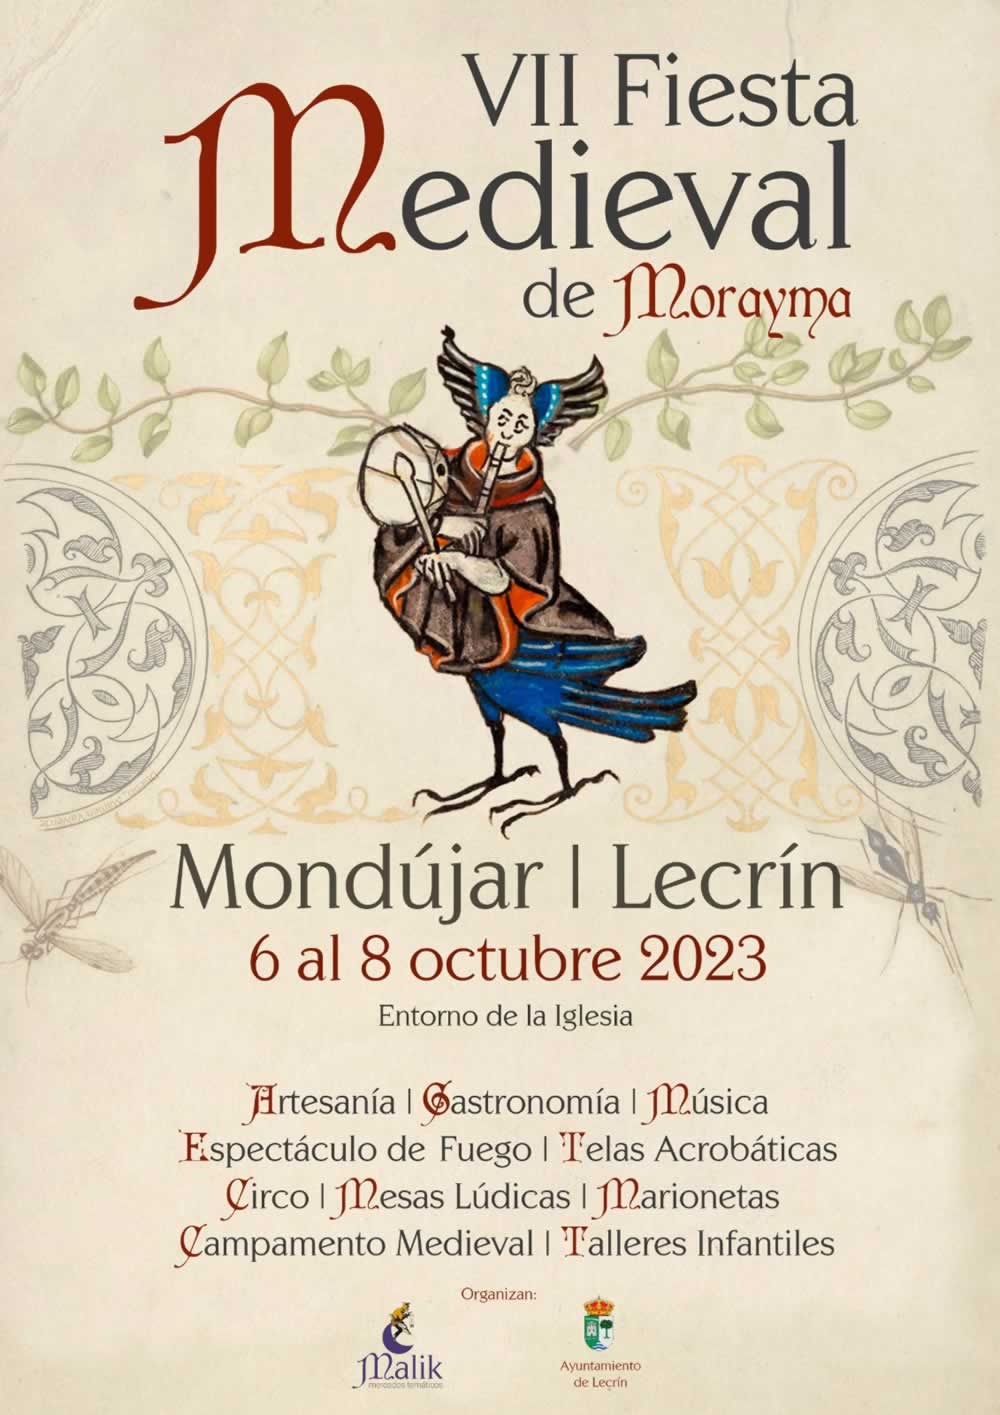 mercadosmedievales.net - Feria Medieval Mora en Lecrin, Granada 2023